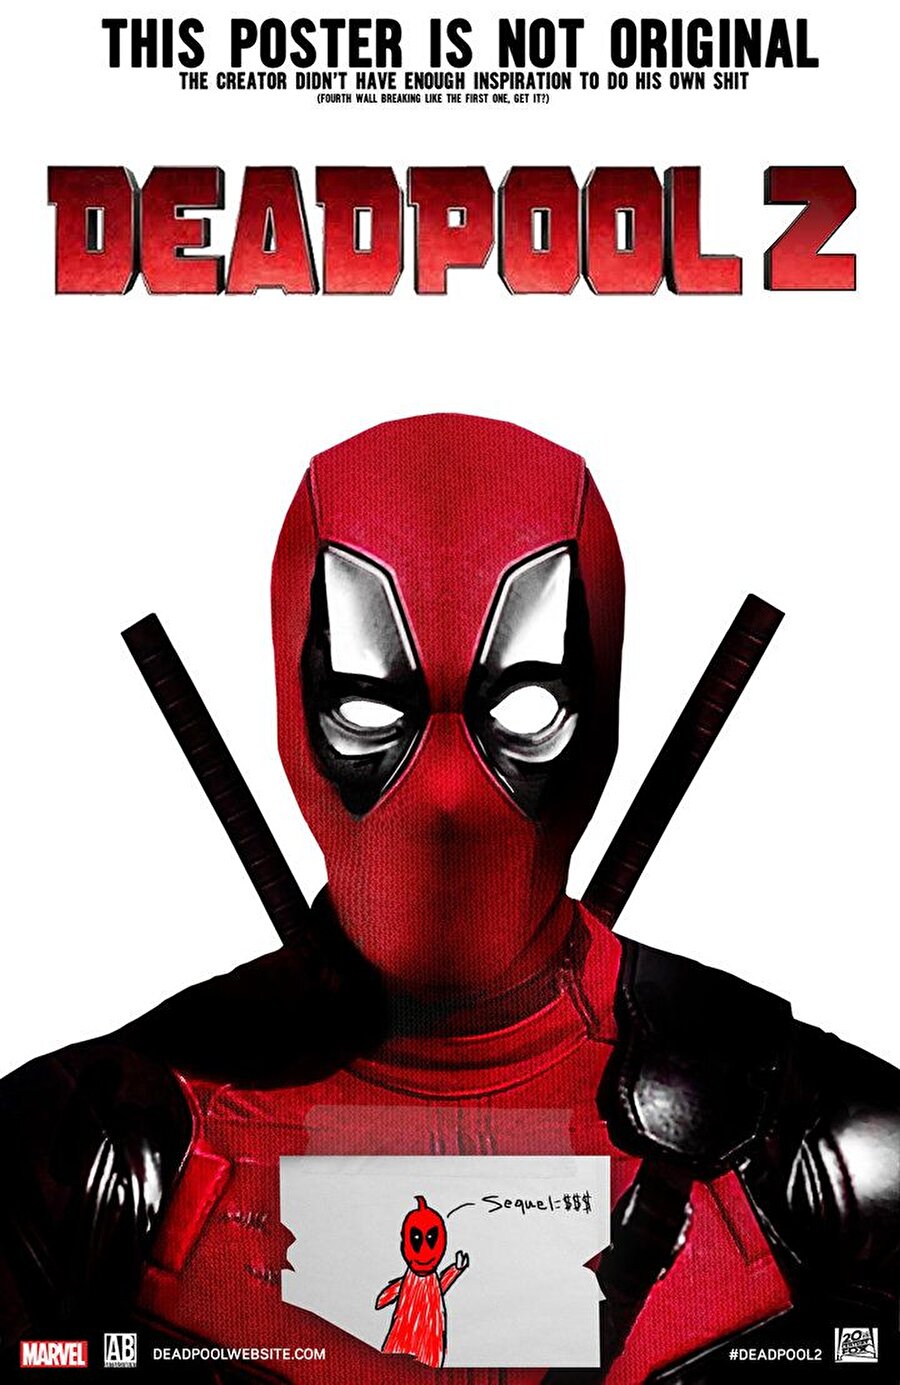 Deadpool 2
David Leitch'in yönetmen koltuğunda oturduğu; Ryan Reynolds, Morena Baccarin, Josh Brolin, T.J. Miller, Brianna Hildebrand, Leslie Uggams, Zazie Beetz, Bill Skarsgard, Terry Crews, Rob Delaney ve Julian Dennison'ın oynadığı "Deadpool 2" aksiyon ve komedi meraklılarını sinema salonlarına çekmeyi amaçlıyor.
Ryan Reynolds'ın yeniden sevilen karakterini canlandırdığı devam filmi, gelecekten gelen Cable'a karşı kendi süper kahraman timini toplayan Deadpool'un maceralarını konu alıyor.